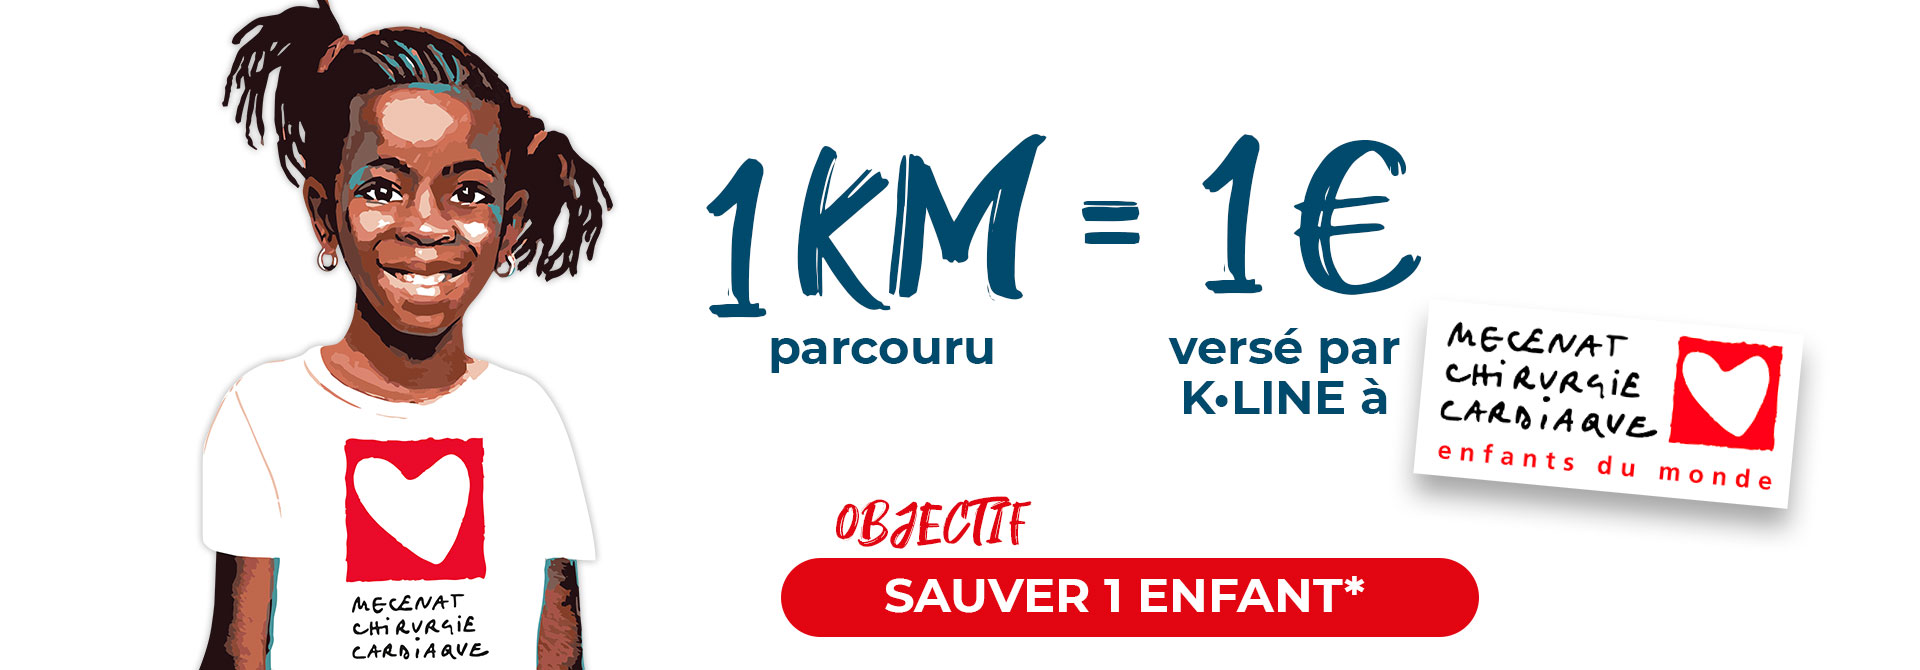 challenge Objectif Km For KLINE : Sauver 1 enfant